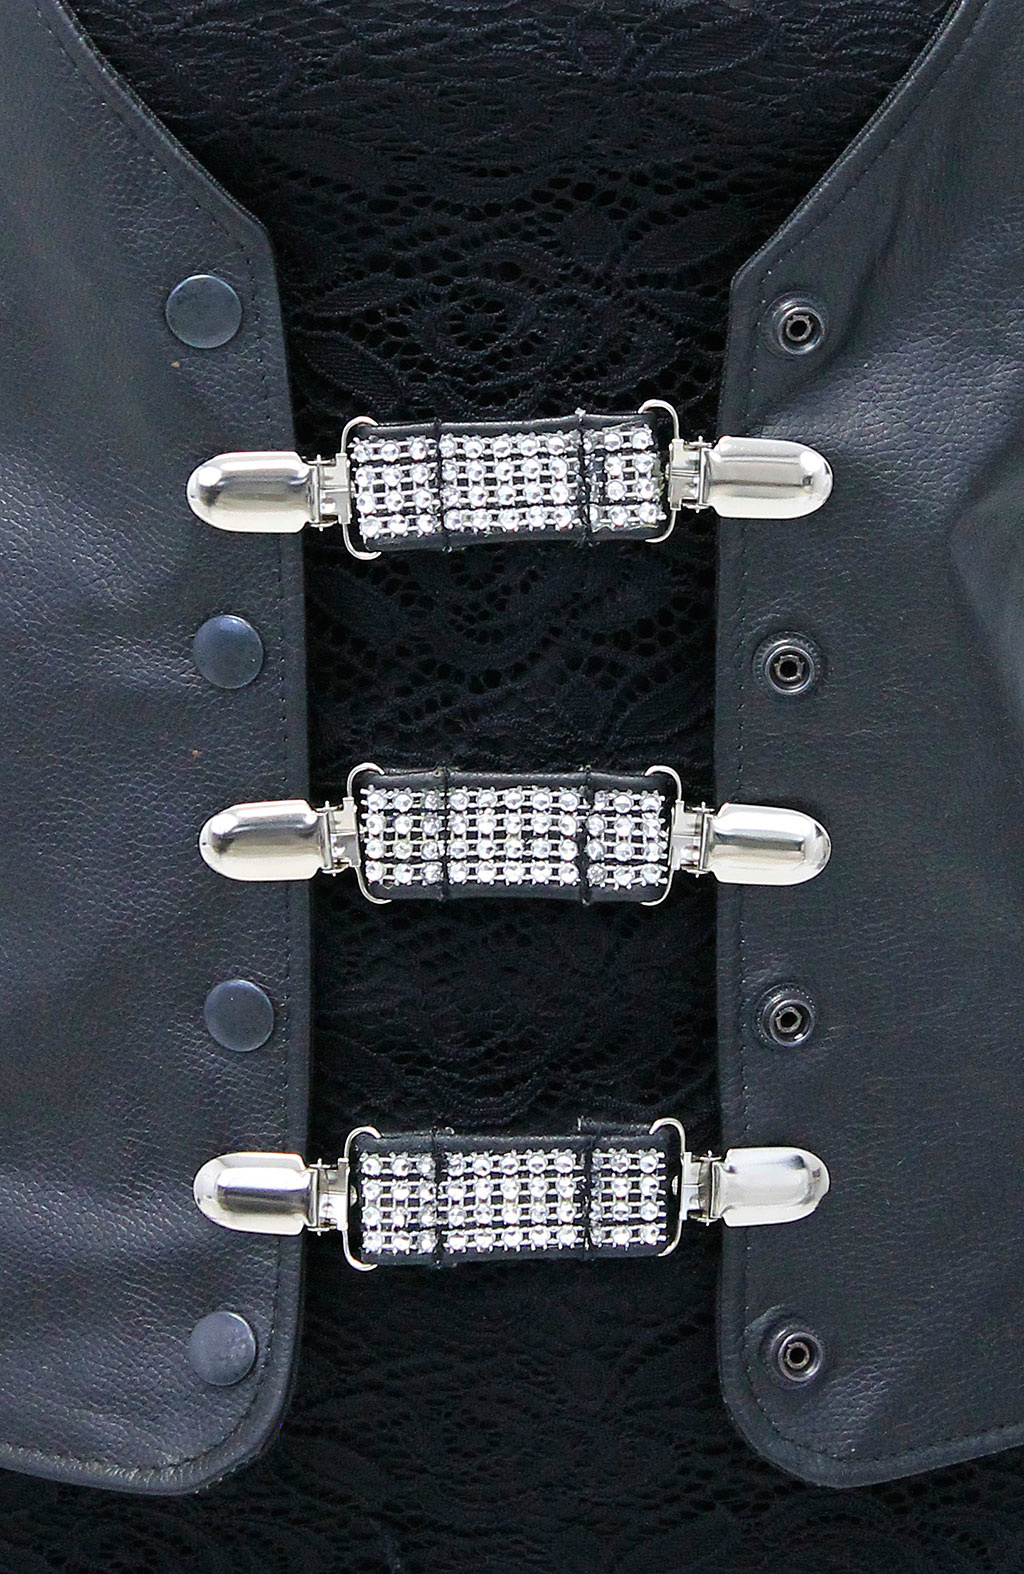 Pants Button Extender Collar Button Extender Set,Waist Jeans Extender  Button for Men Women,Collar Neck Button Extenders for Shirts